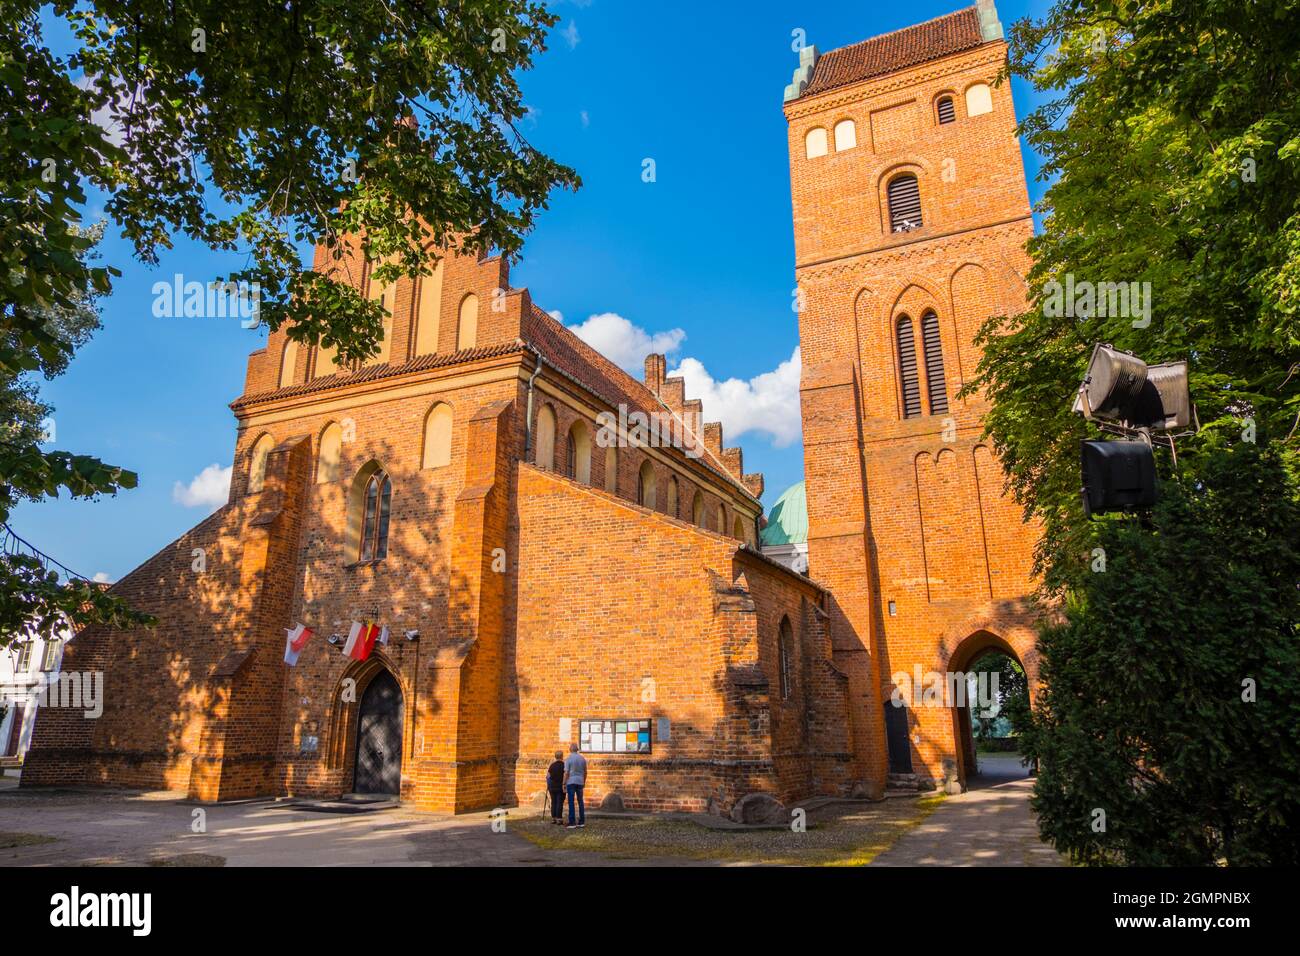 Kościół Nawiedzenia Najświętszej Marii Panny, Church of the Visitation of the Blessed Virgin Mary, Nowe Miasto, new town, Warsaw, Poland Stock Photo